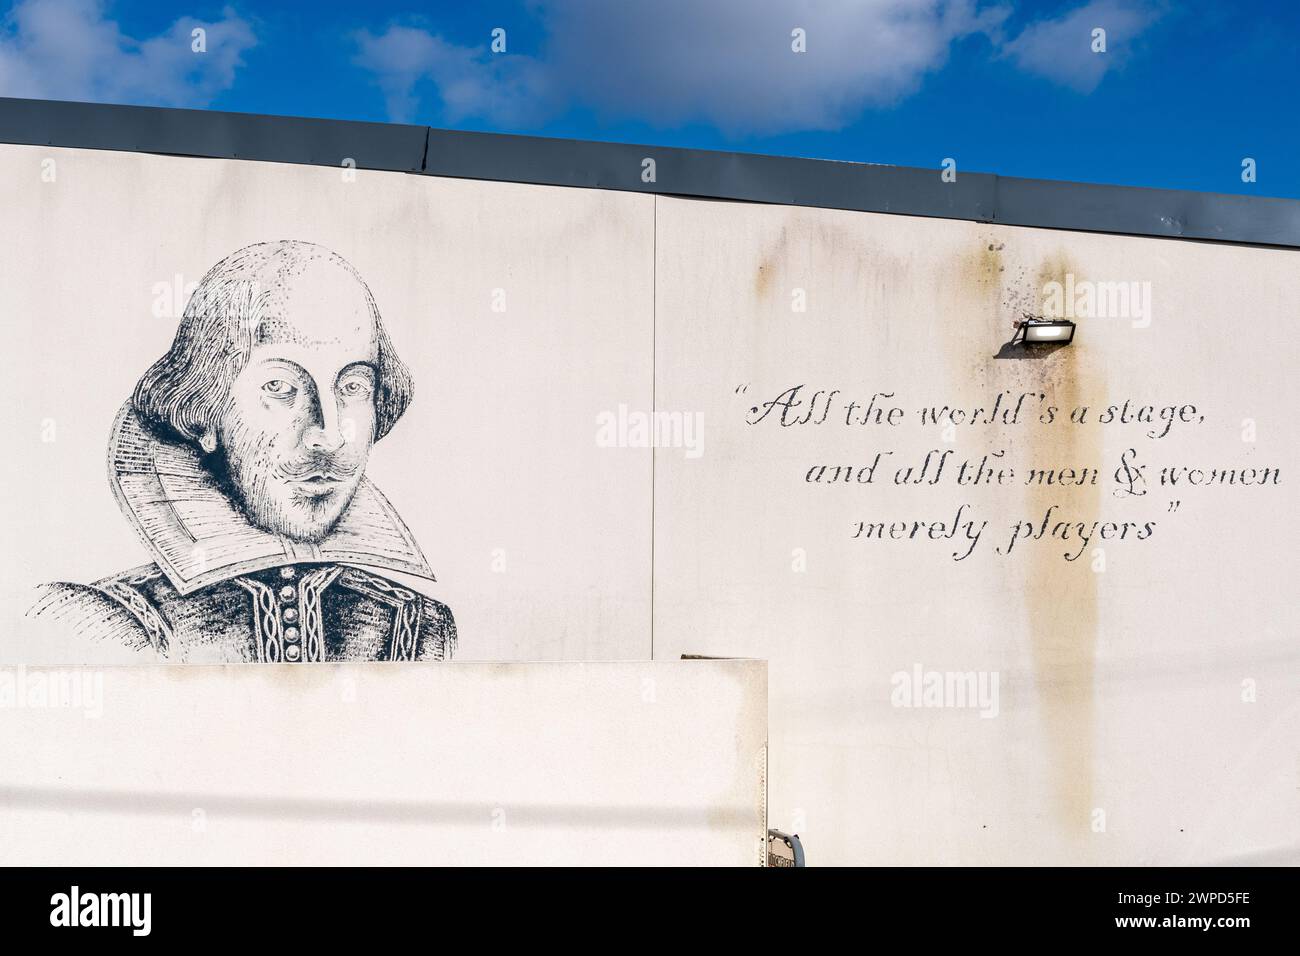 Portrait de William Shakespeare et citation célèbre sur le mur du Titchfield Festival Theatre à Titchfield, Hampshire, Angleterre, Royaume-Uni Banque D'Images